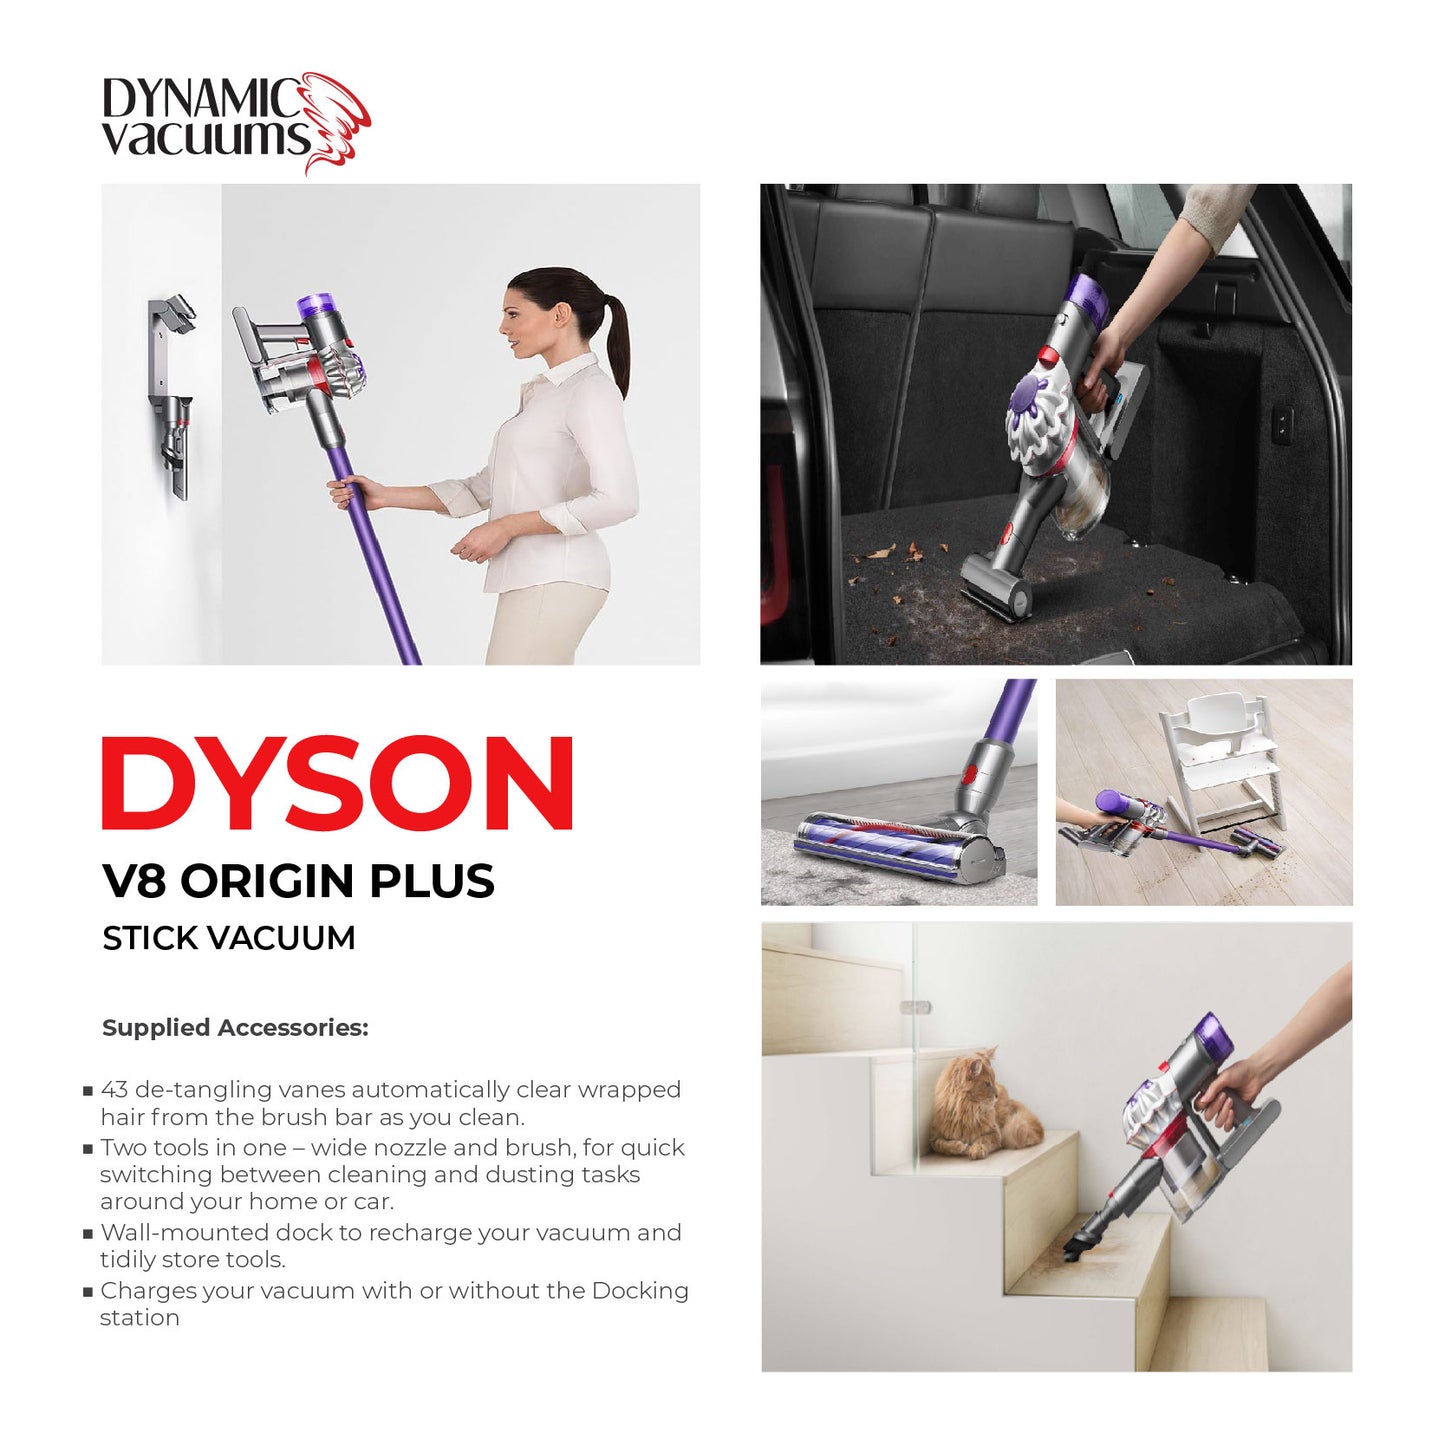 Dyson V8 Origin Plus Stick Vacuum